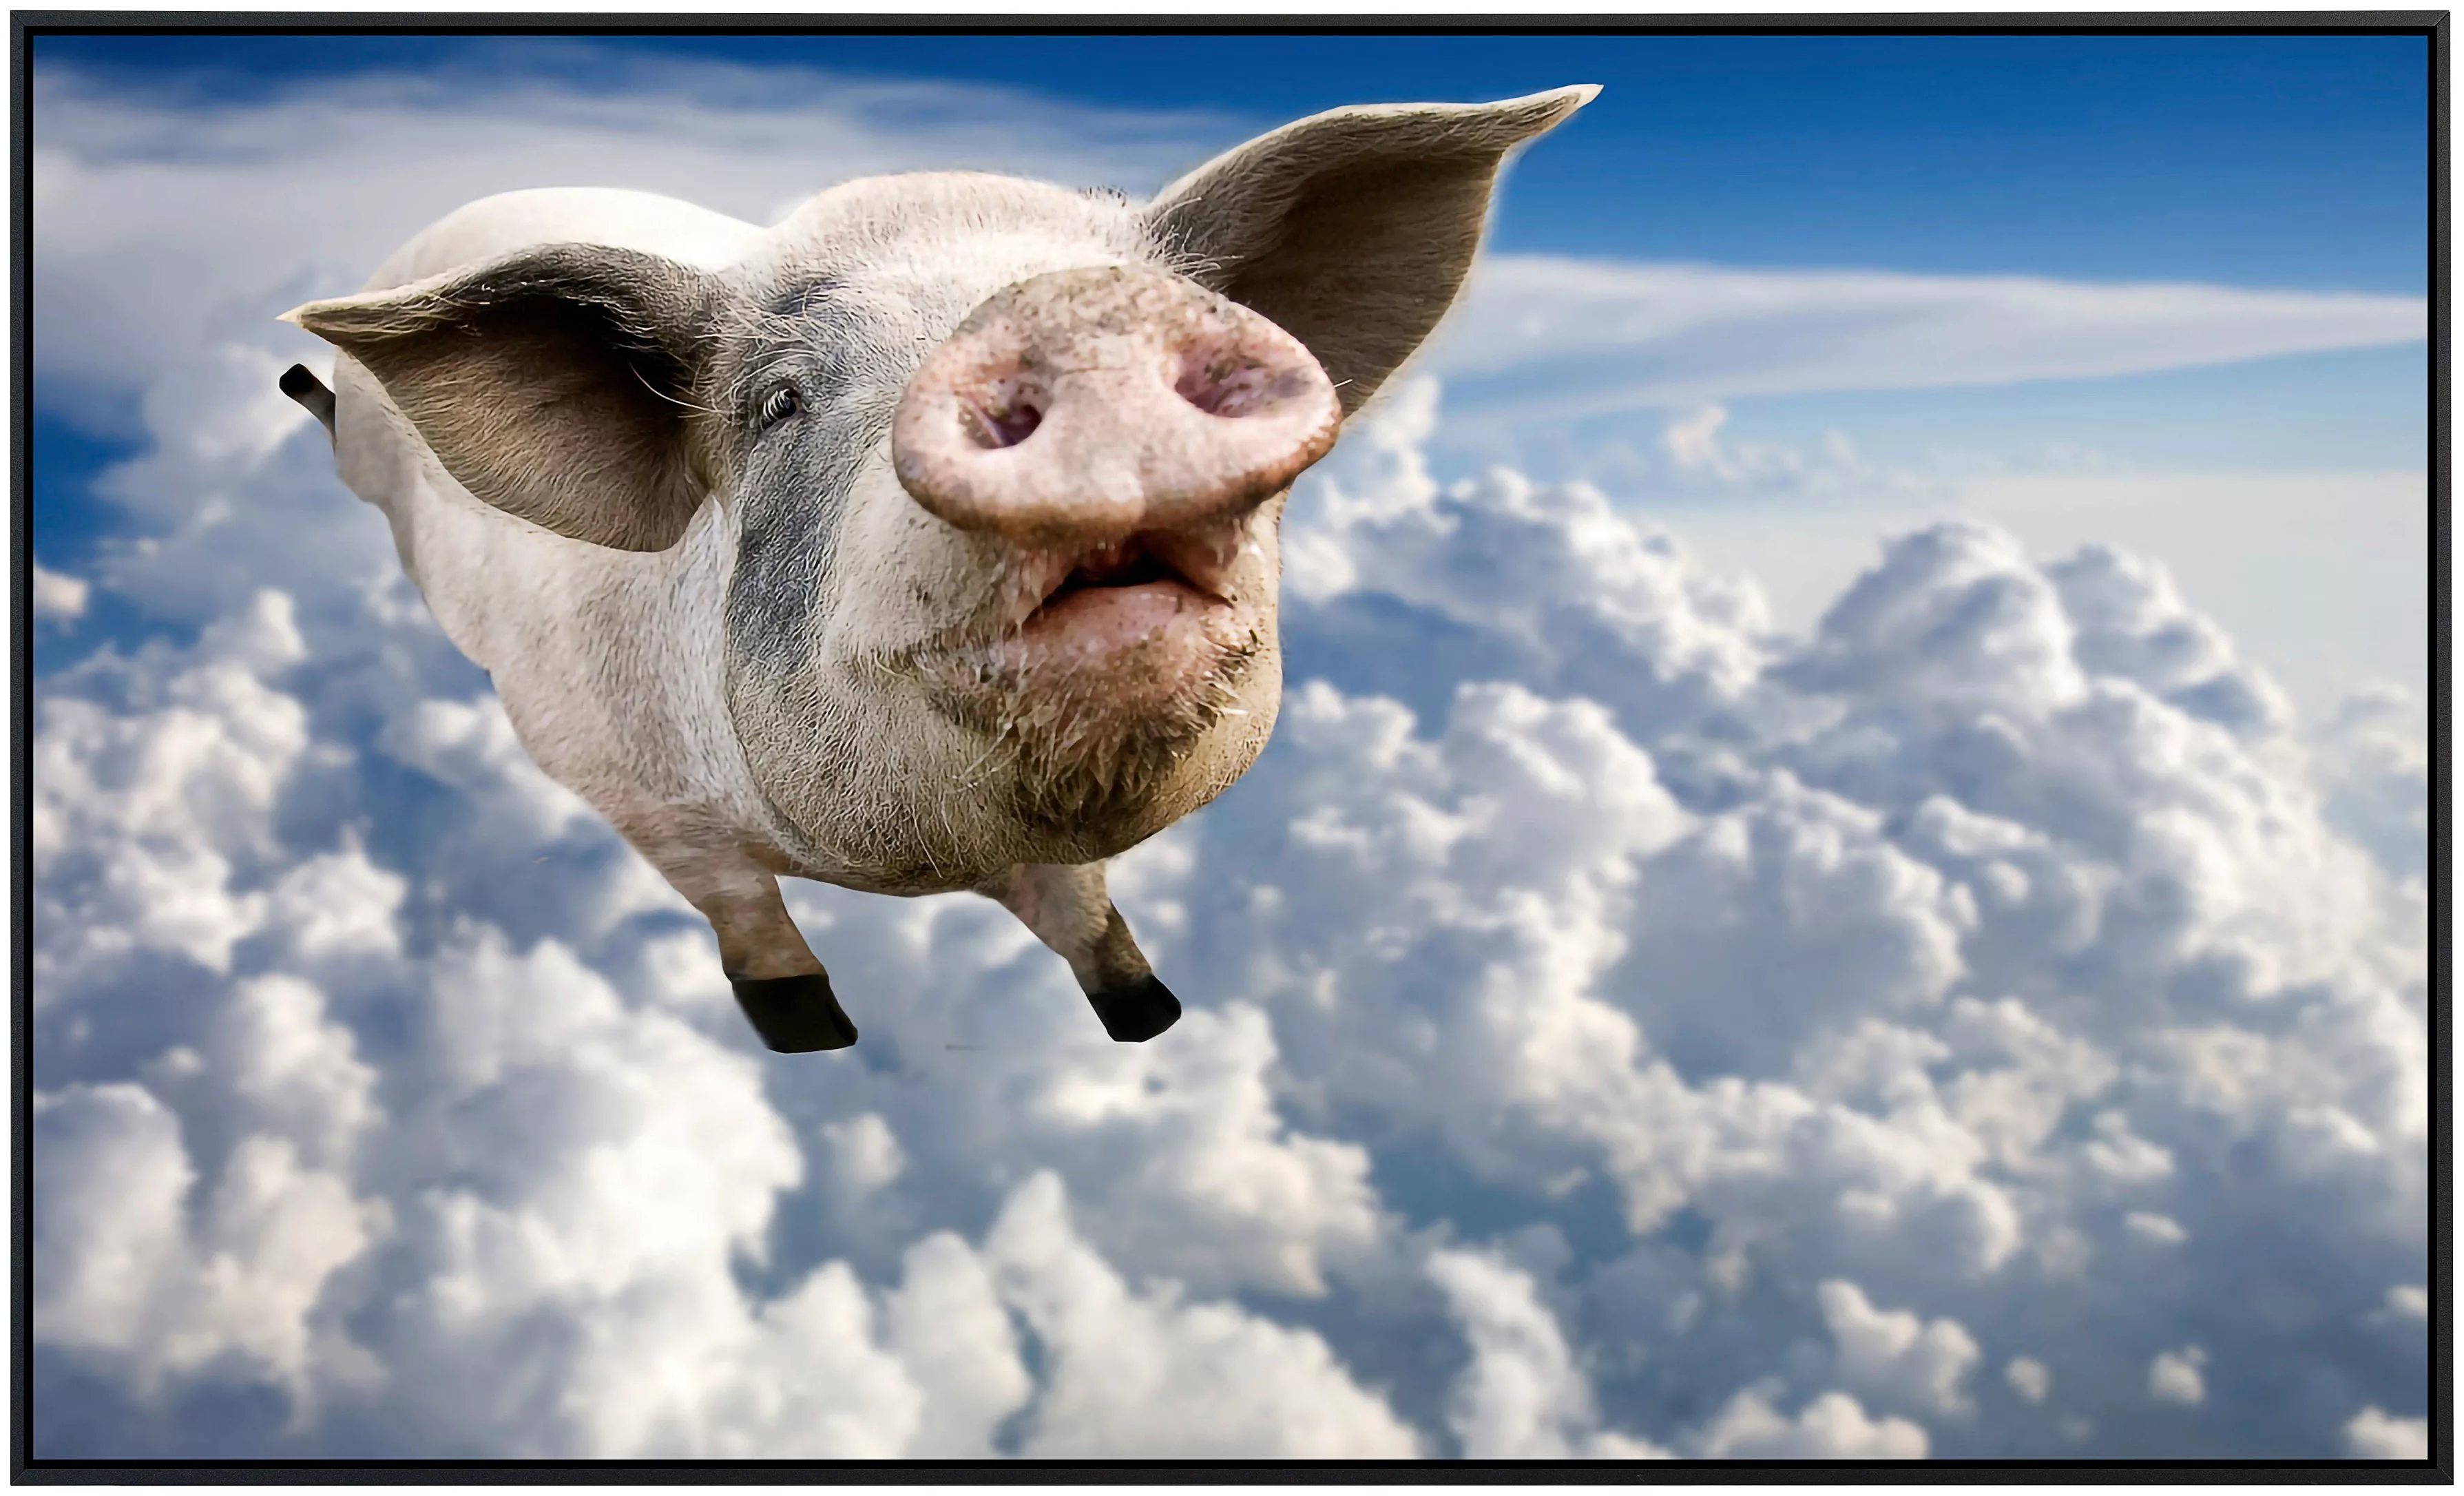 Papermoon Infrarotheizung »Fliegendes Schwein« günstig online kaufen